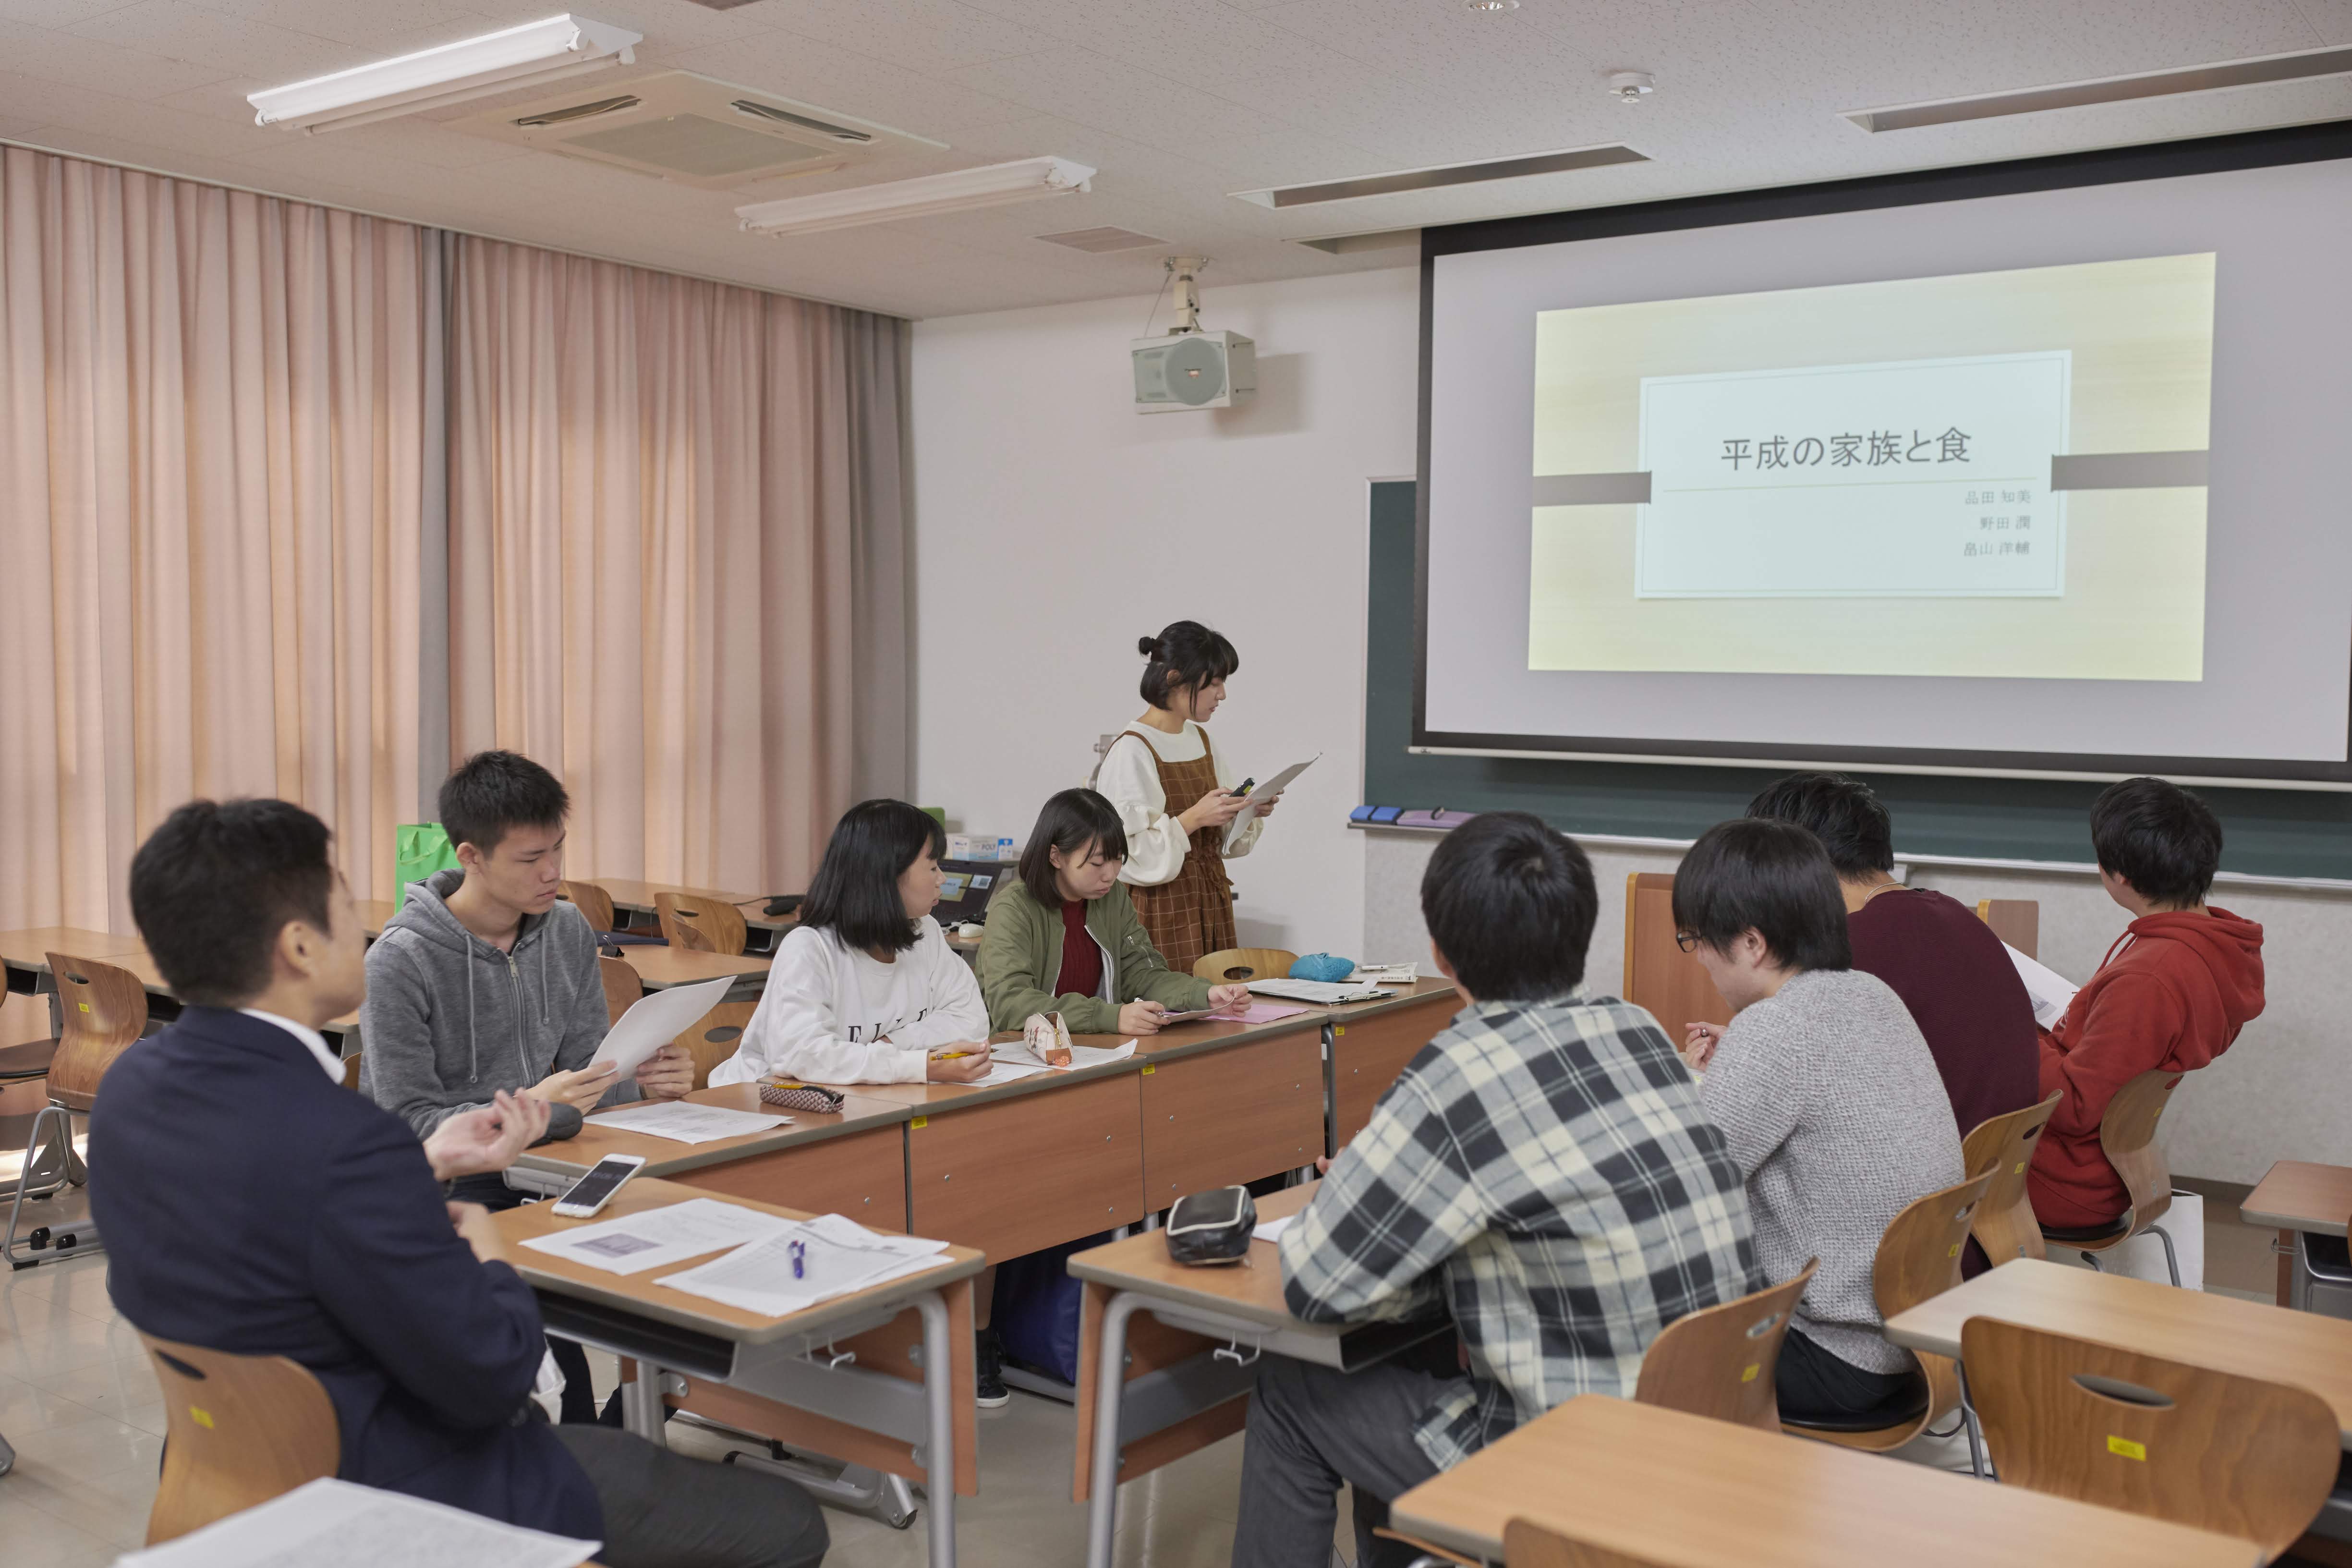 皇學館大学 現代日本社会学部 学費 経済的支援 大学ポートレート